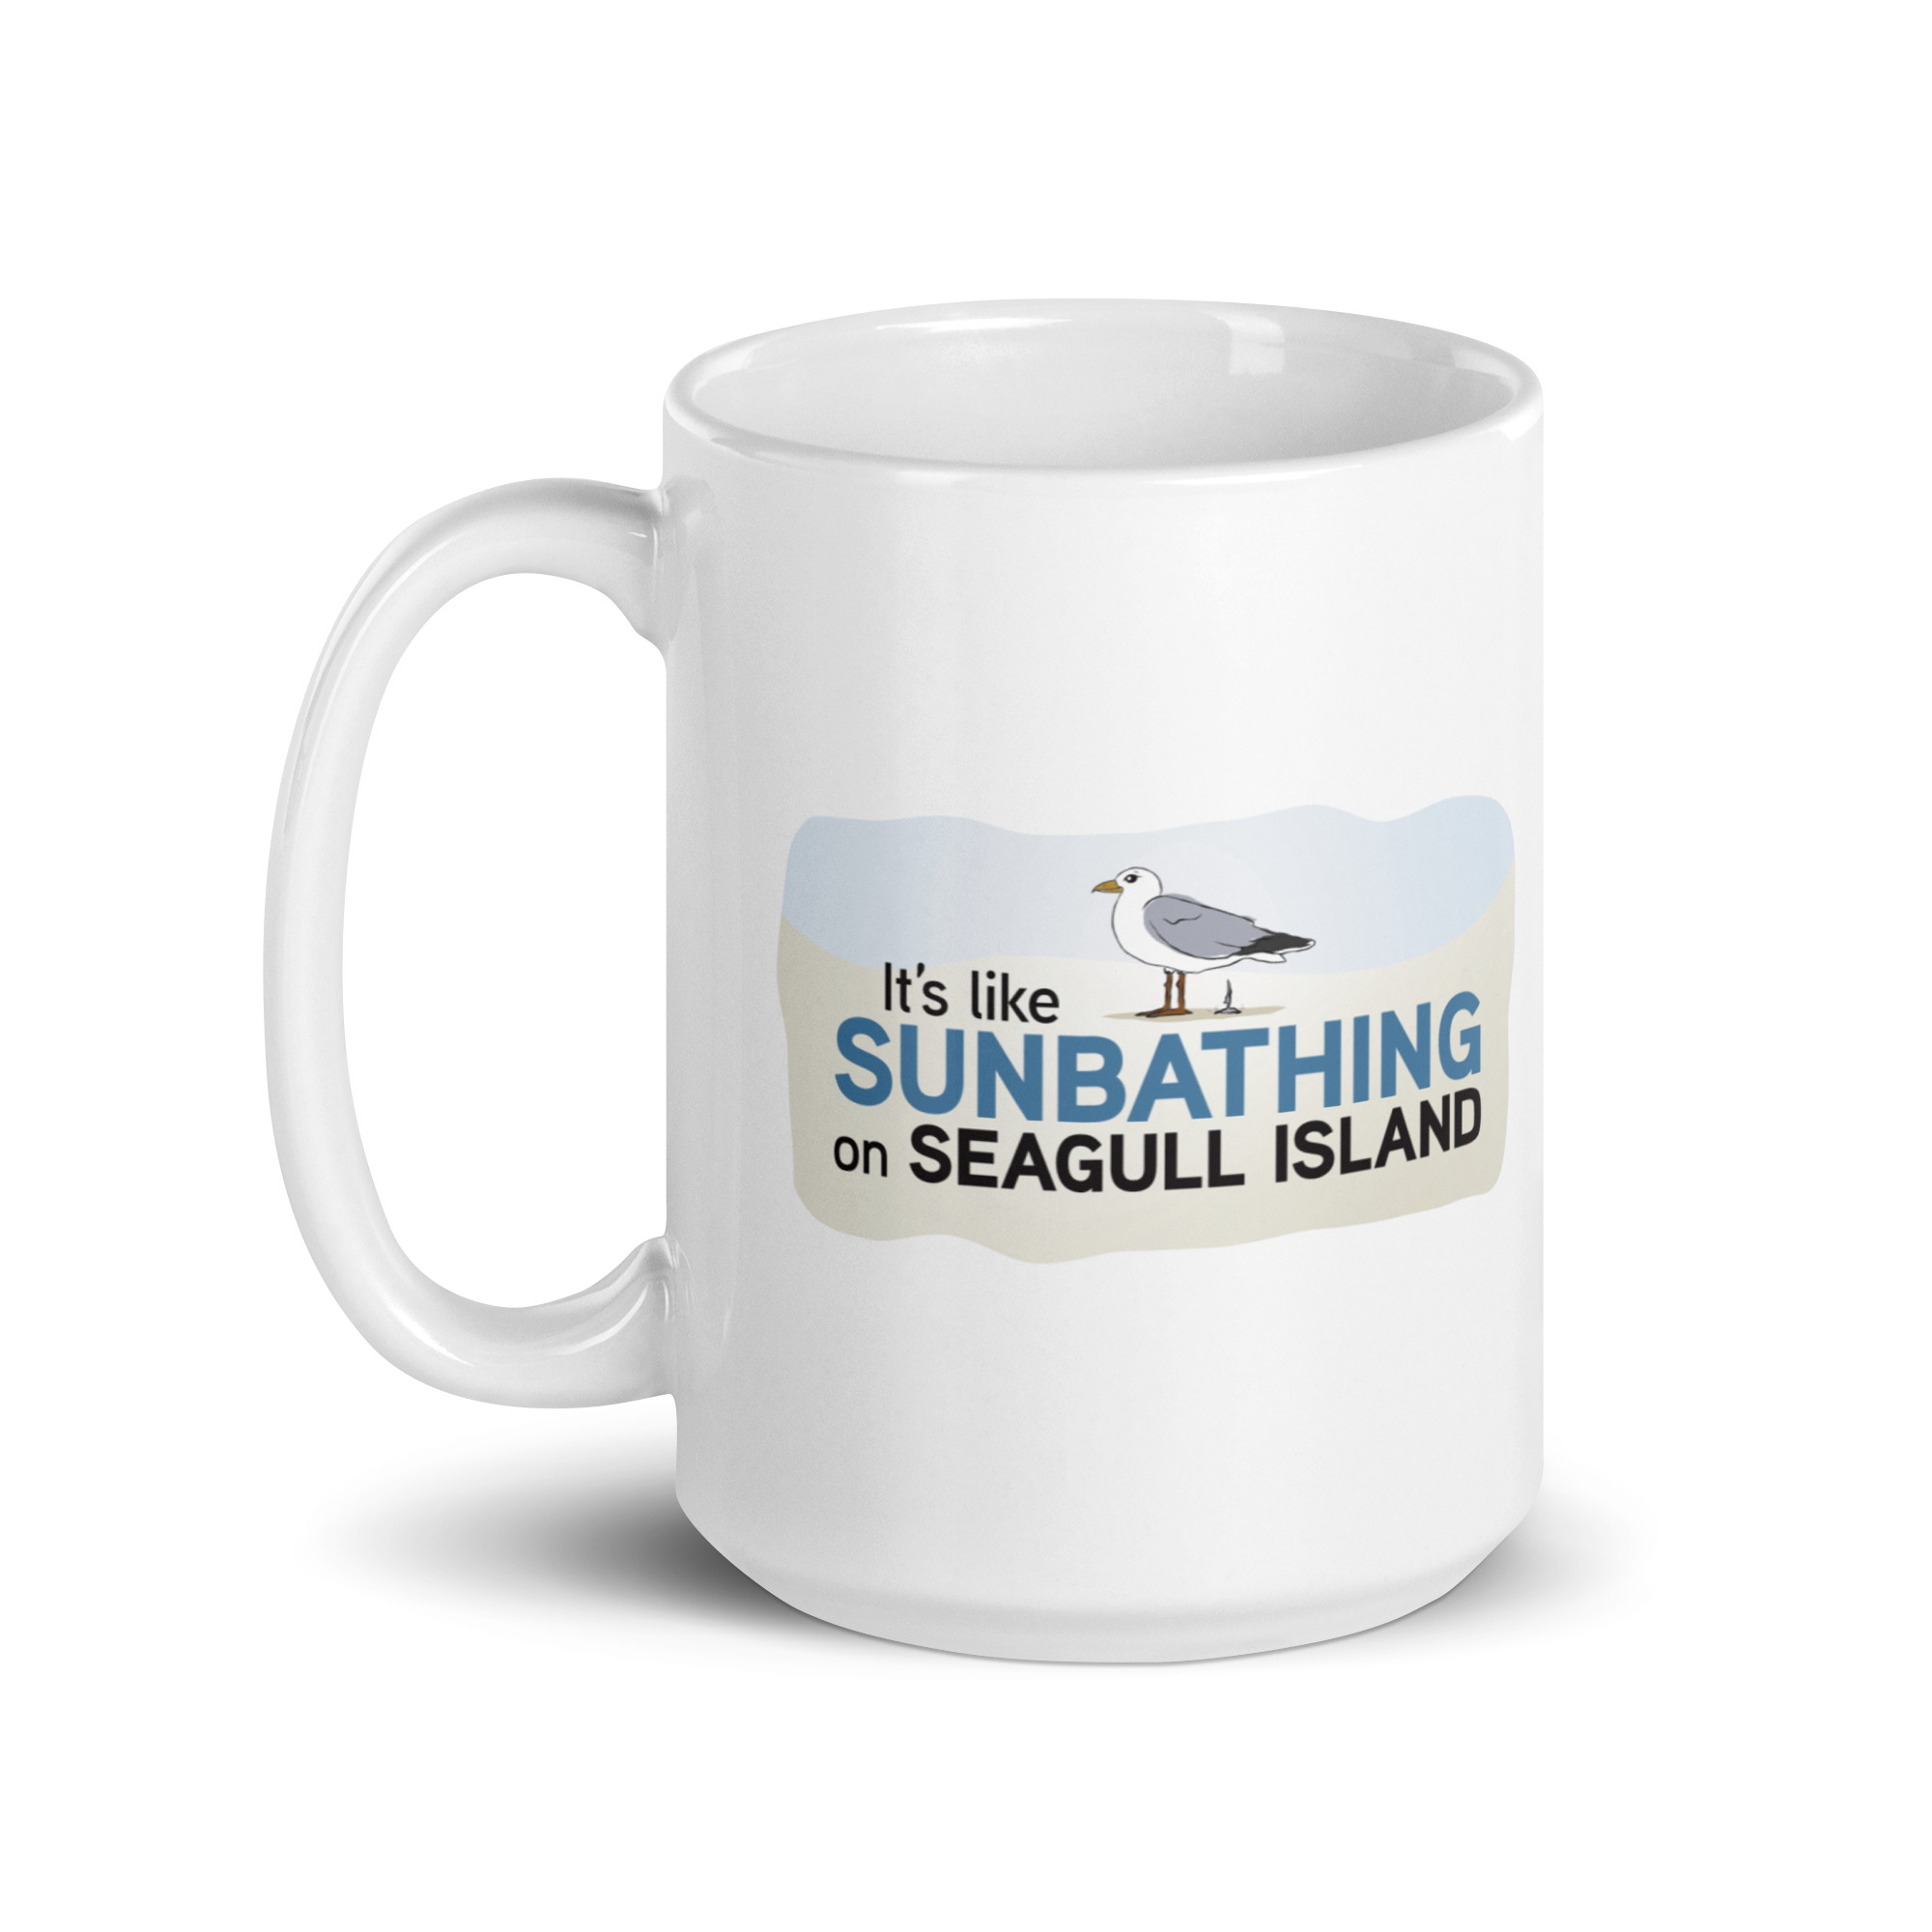 Featured image for “Seagull Island Mug”